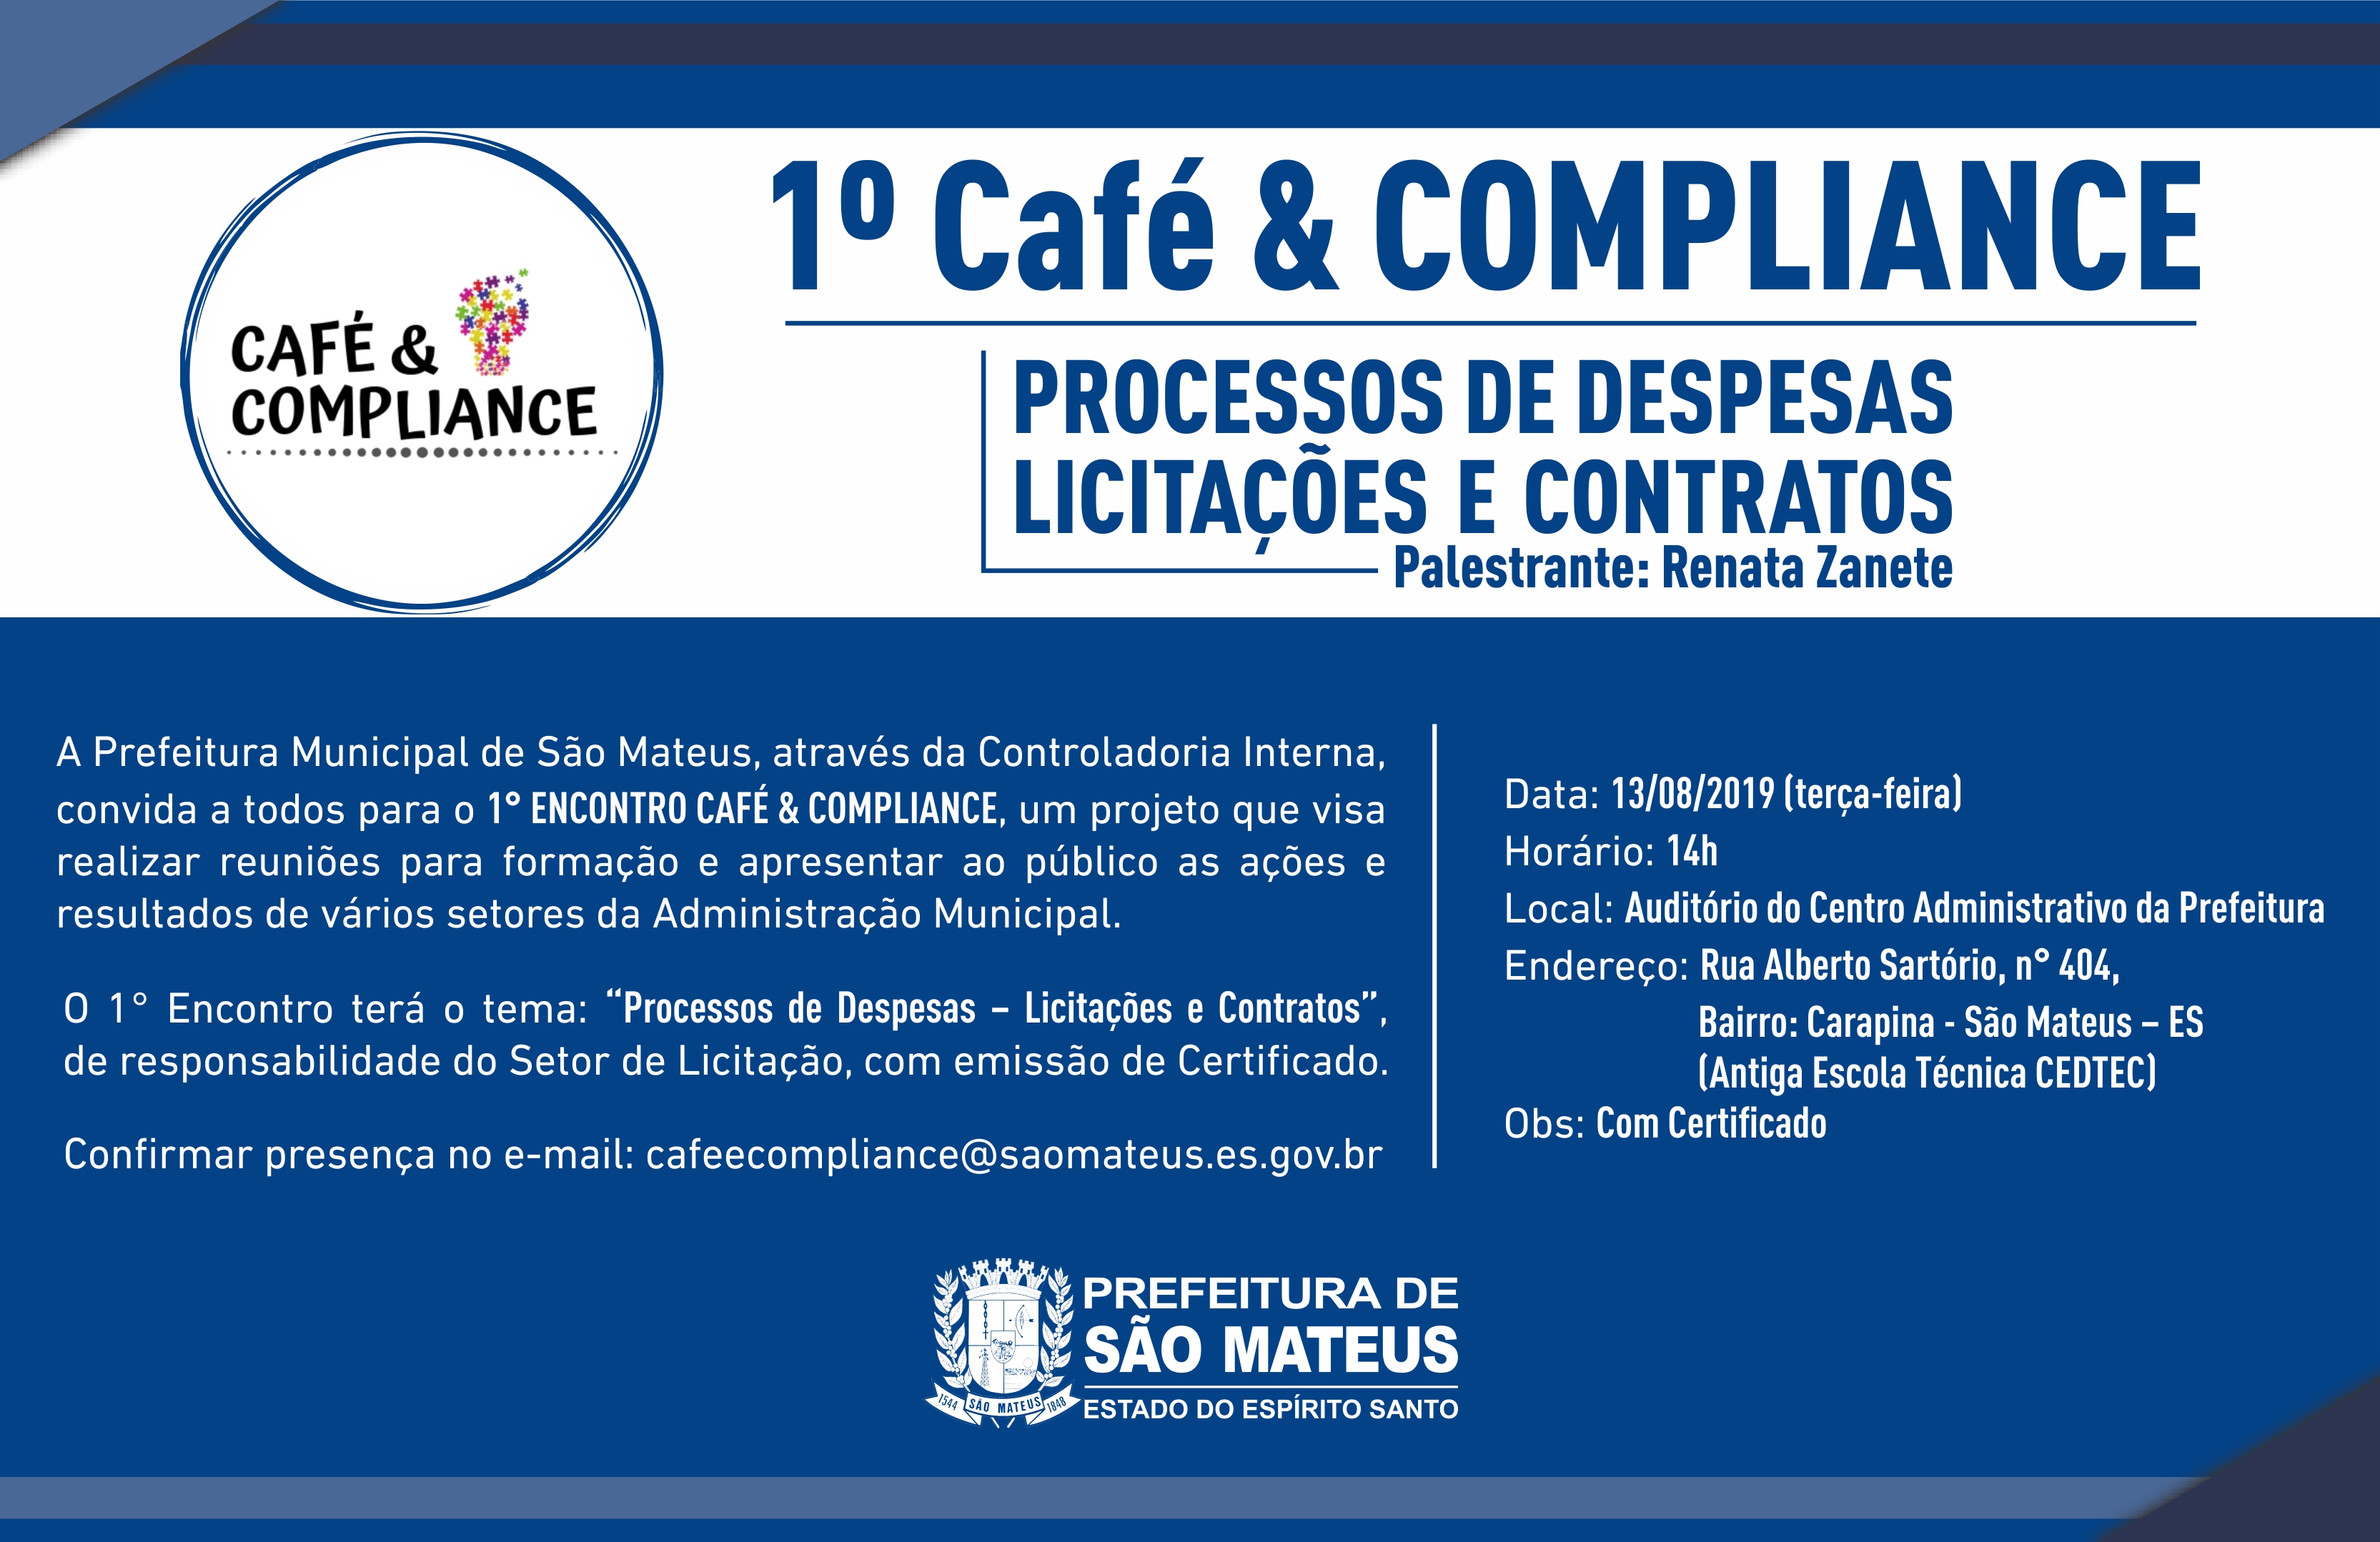 1º CAFÉ & COMPLIANCE - PROCESSOS DE DESPESAS LICITAÇÕES E CONTRATOS